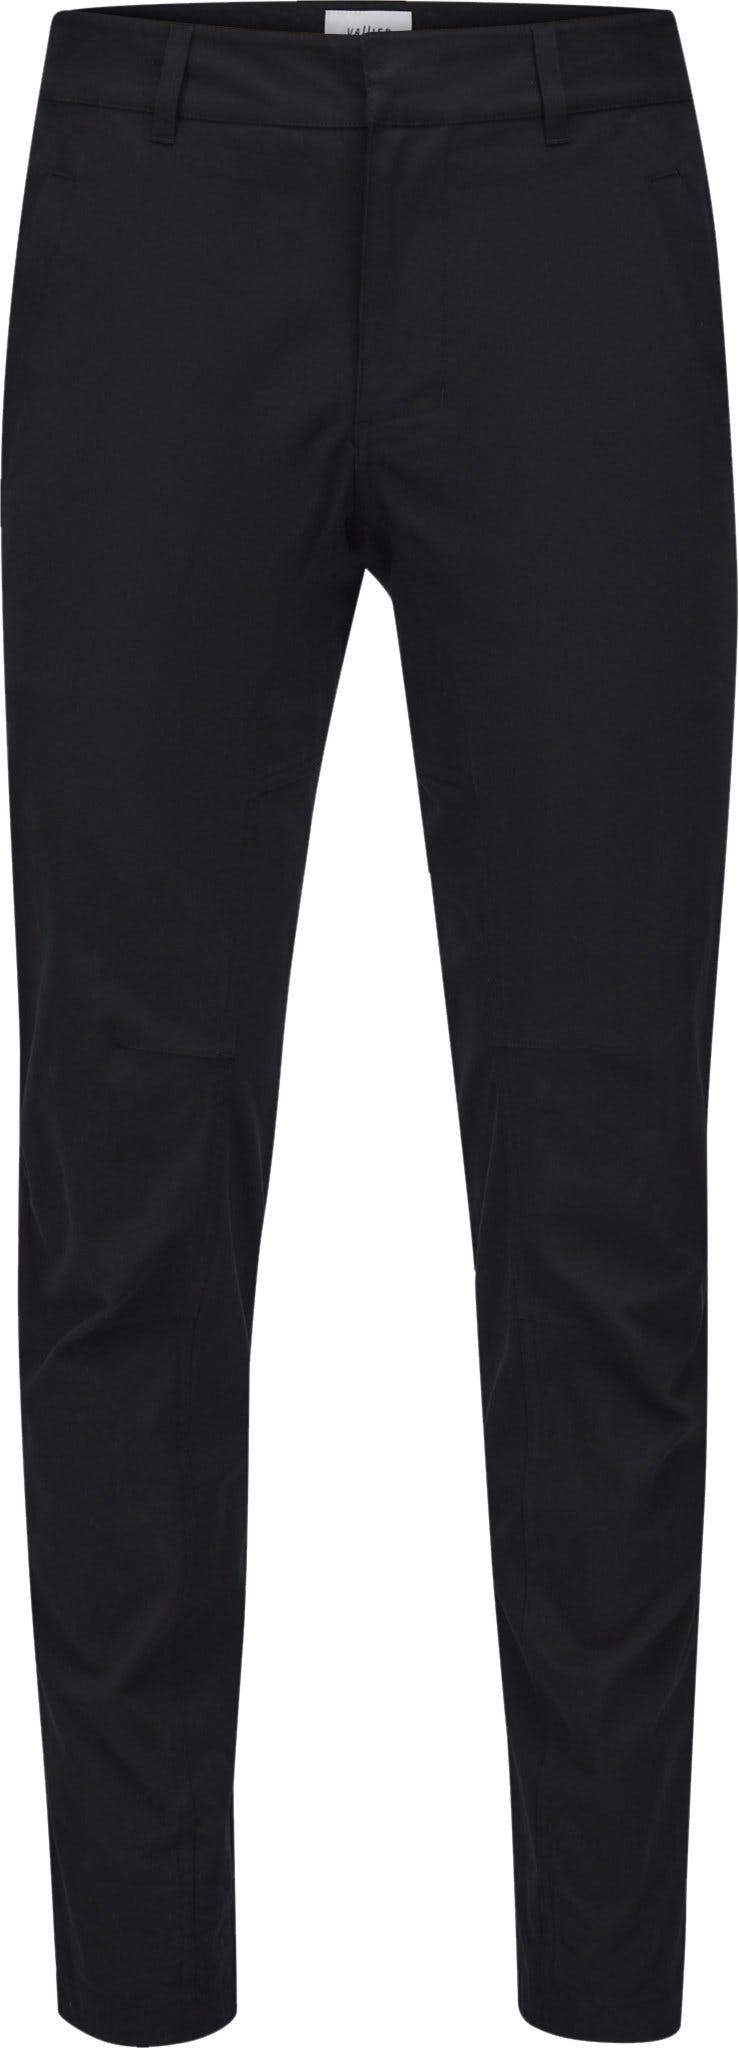 Numéro de l'image de la galerie de produits 1 pour le produit Pantalon articulé Leknes - Homme